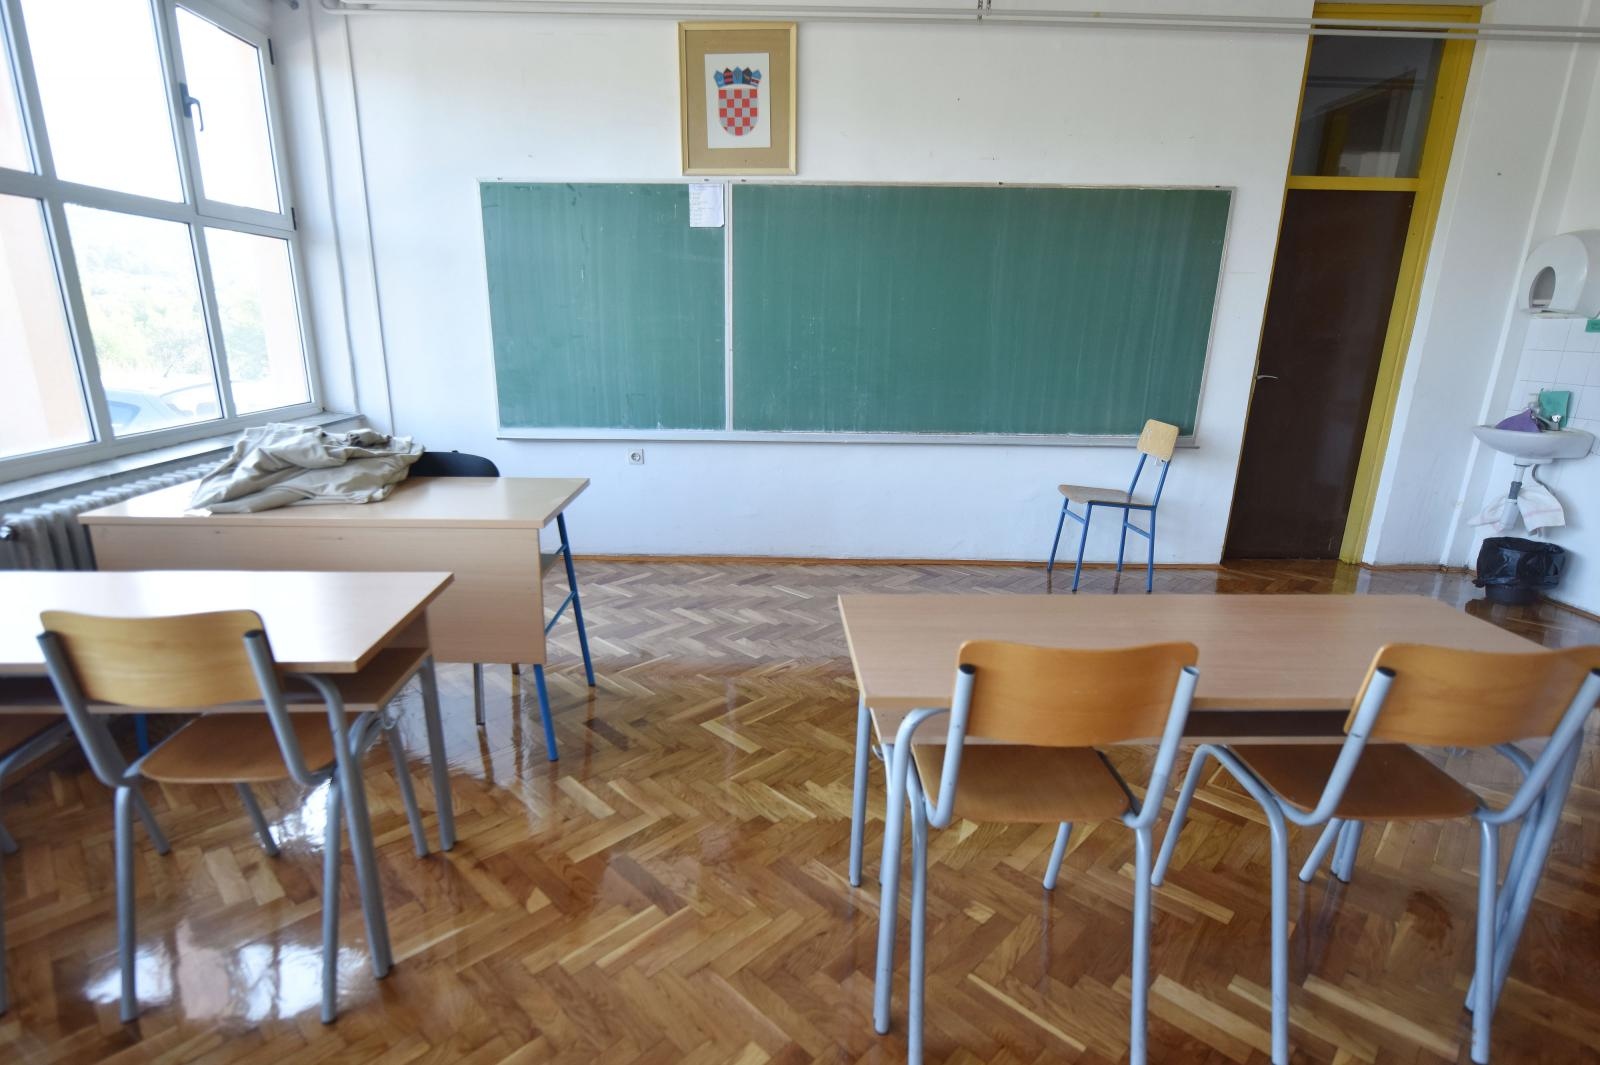 Prazna učionica 31.08.2018., Primosten - Prazna ucionica. 

Photo: Hrvoje Jelavic/PIXSELL